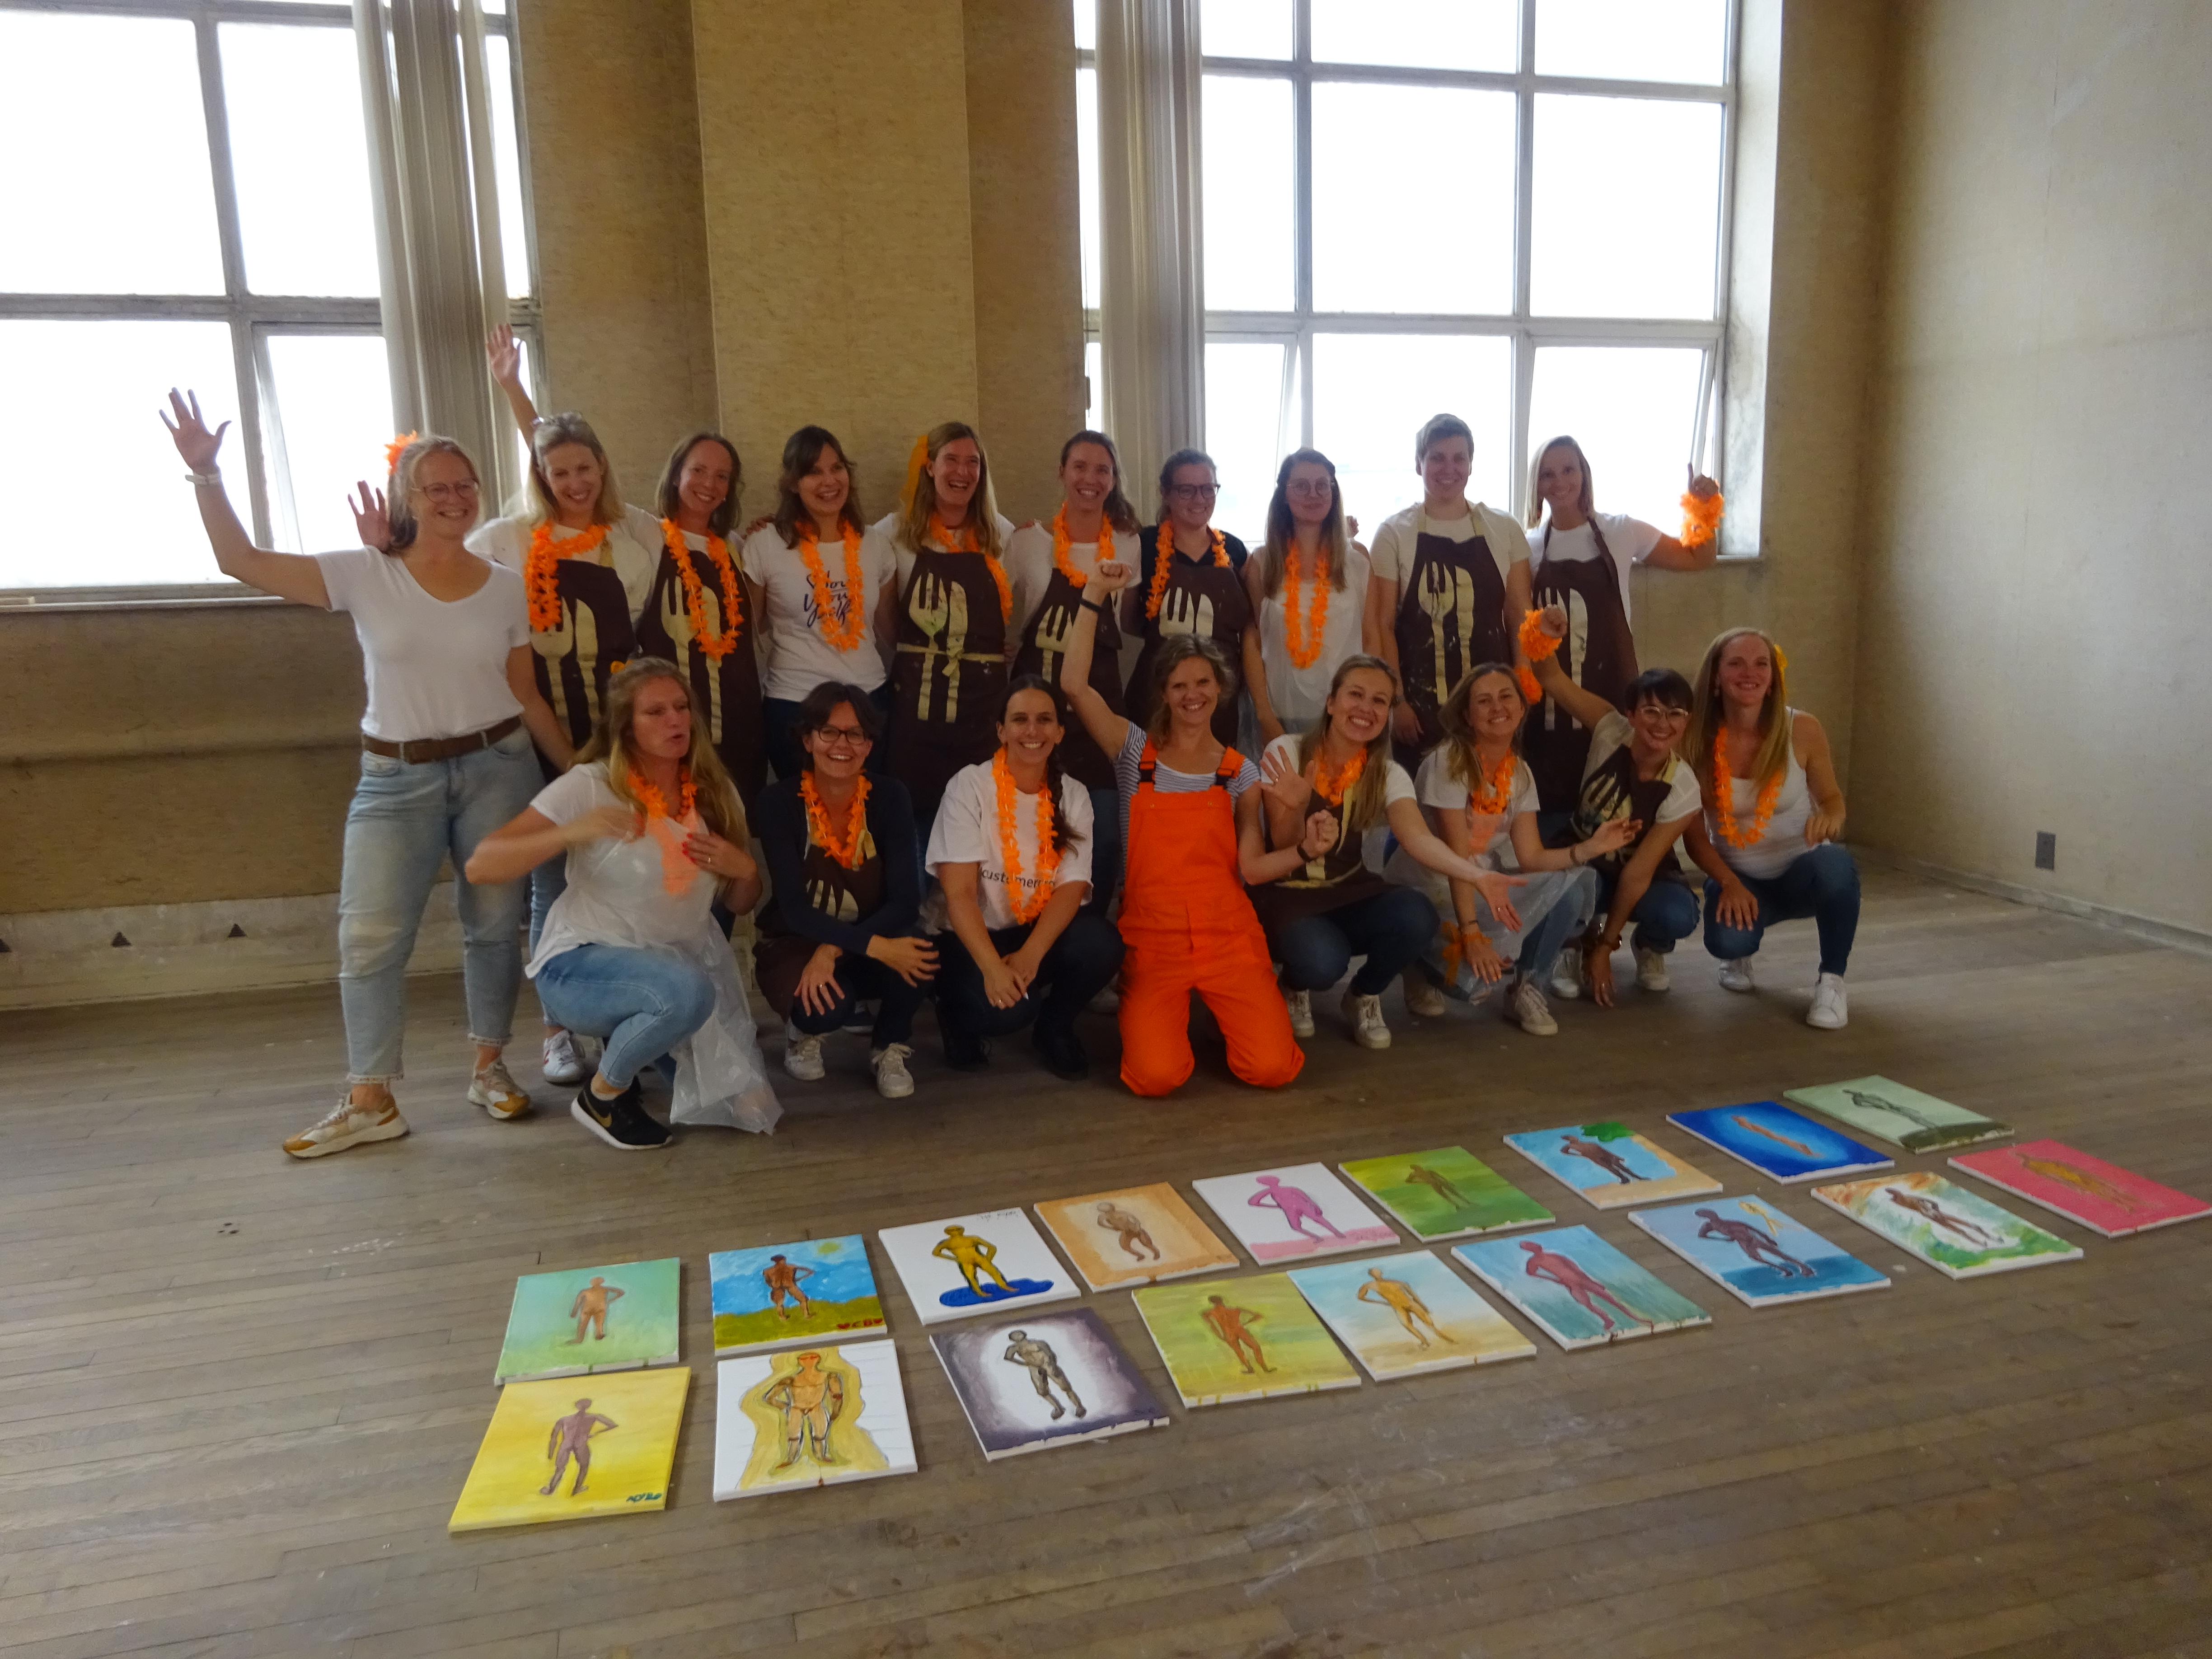 Naaktmodel schilderij vrouwelijk naaktmodel tijdens workshop schilderen in Rotterdam